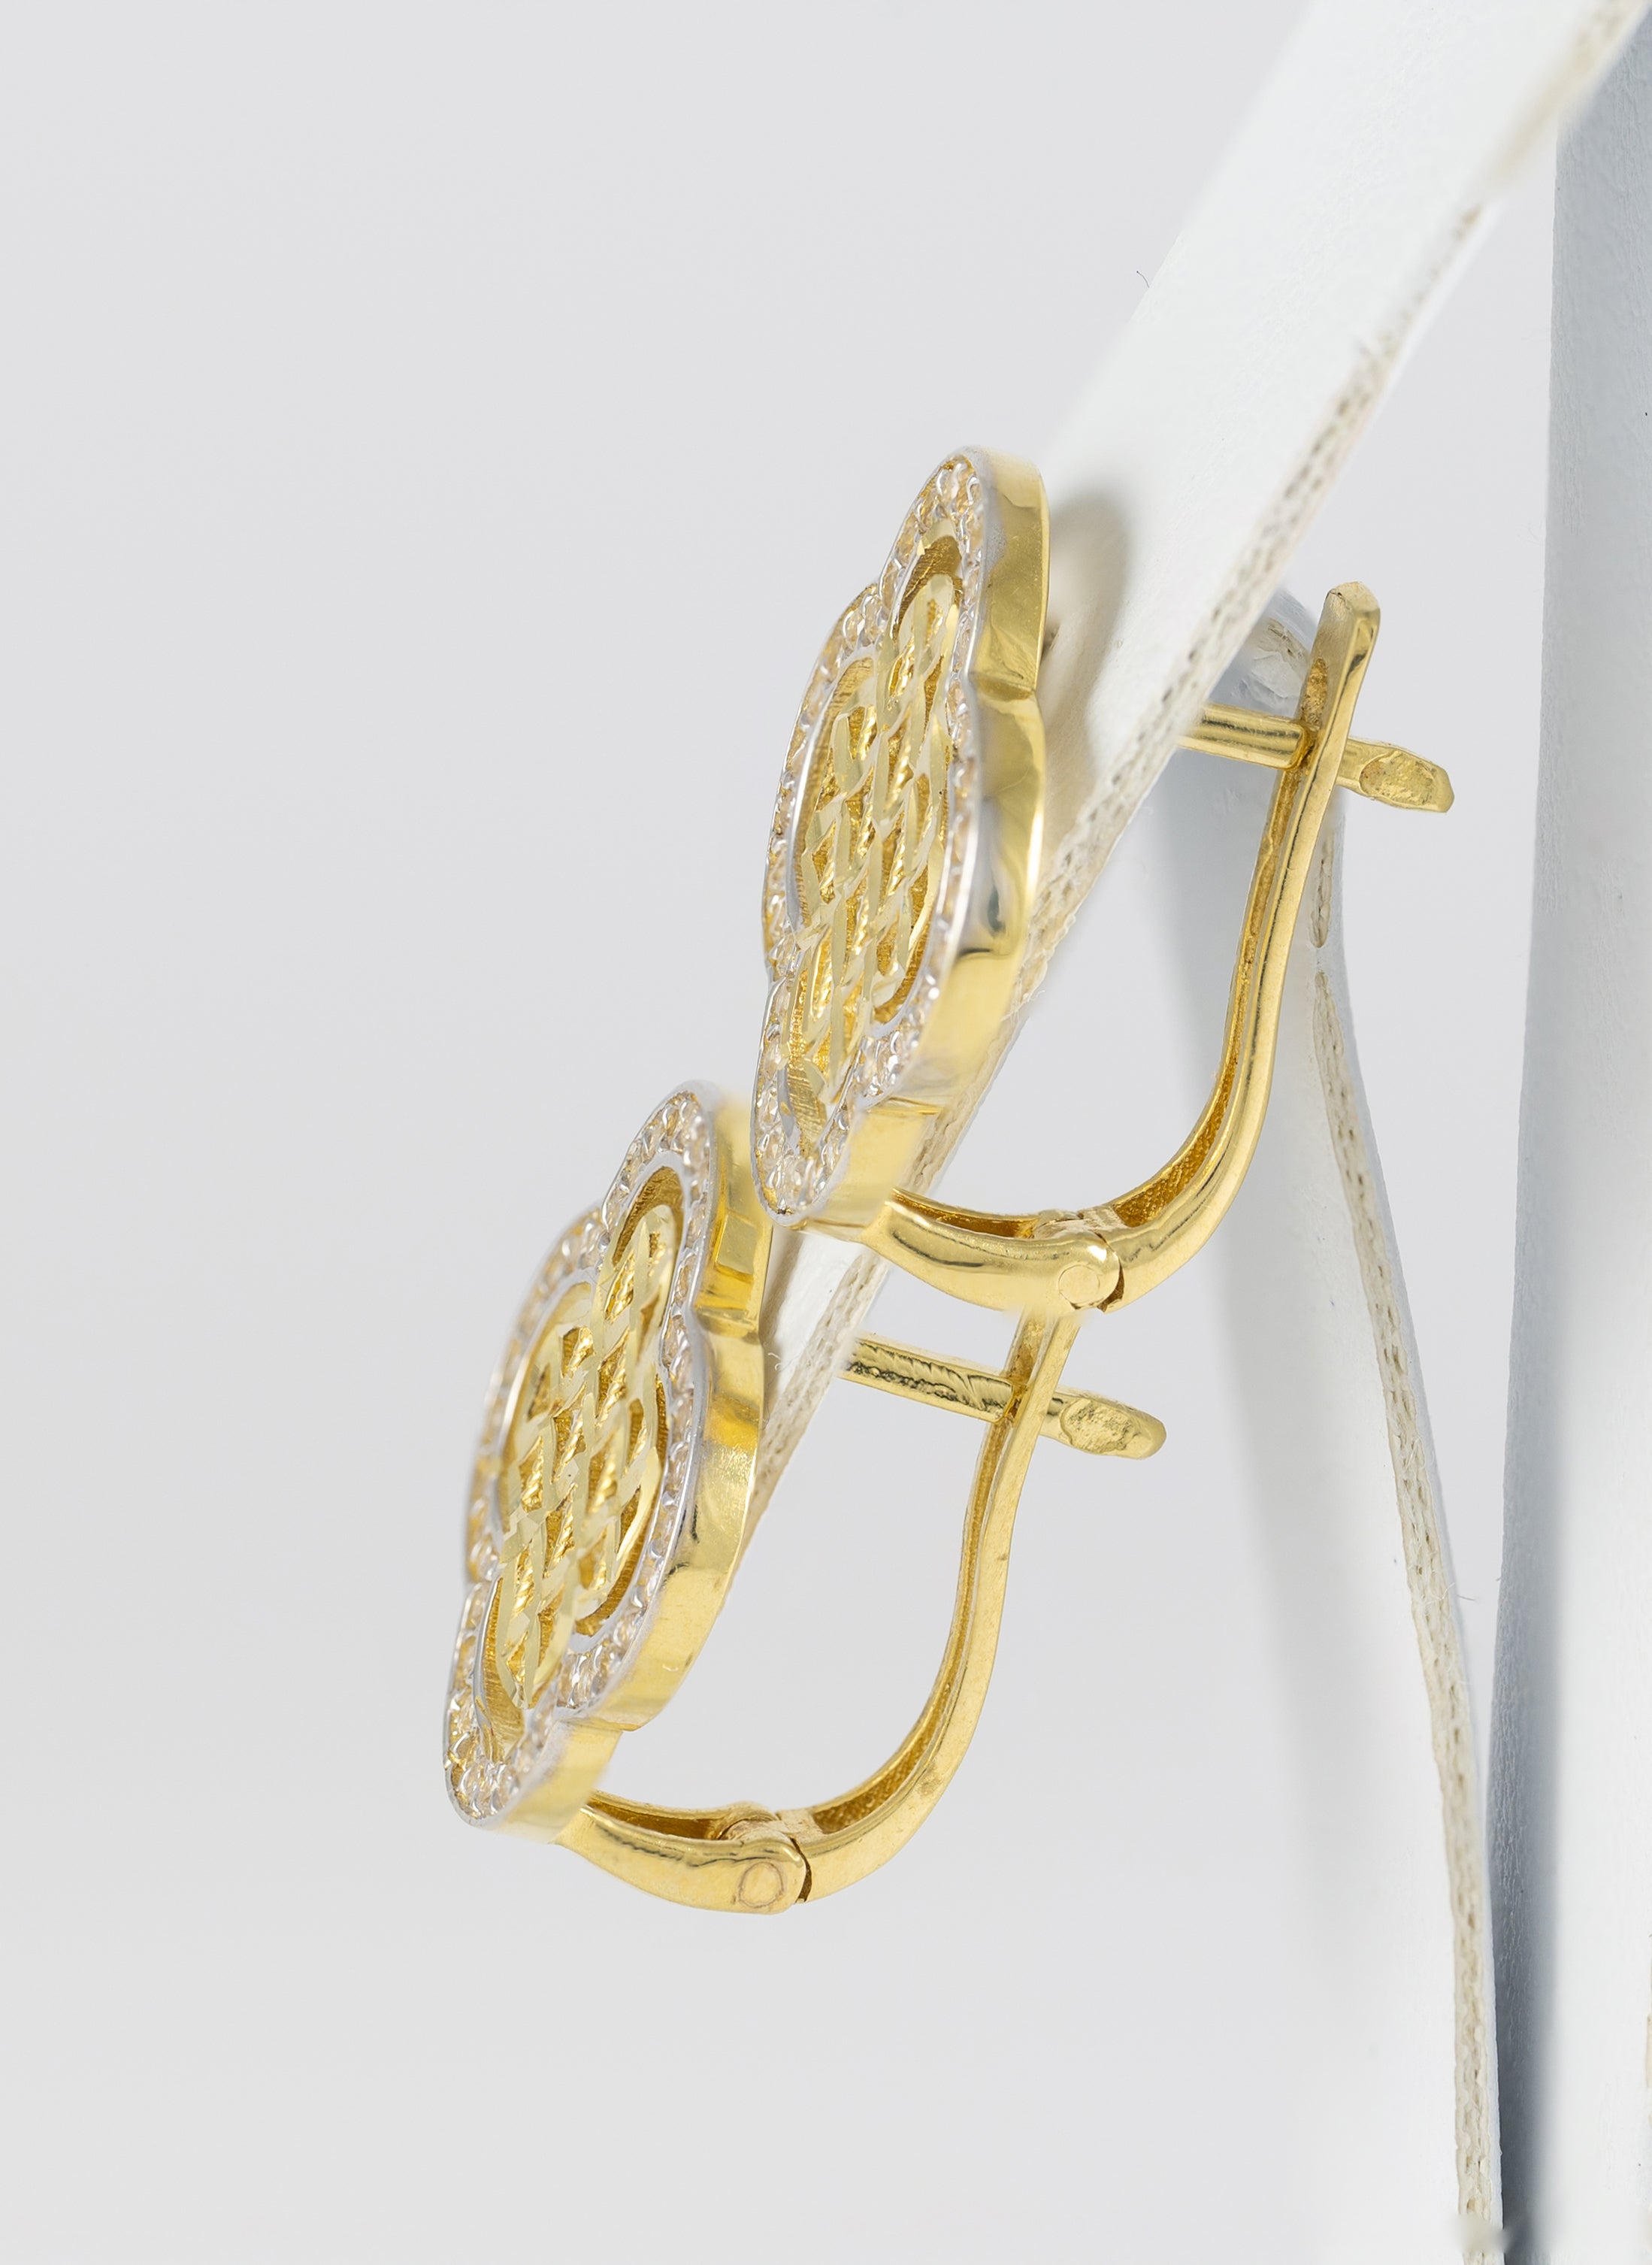 Conjunto de anillo, pendientes cadena con colgante y pulsera en oro amarillo 18k